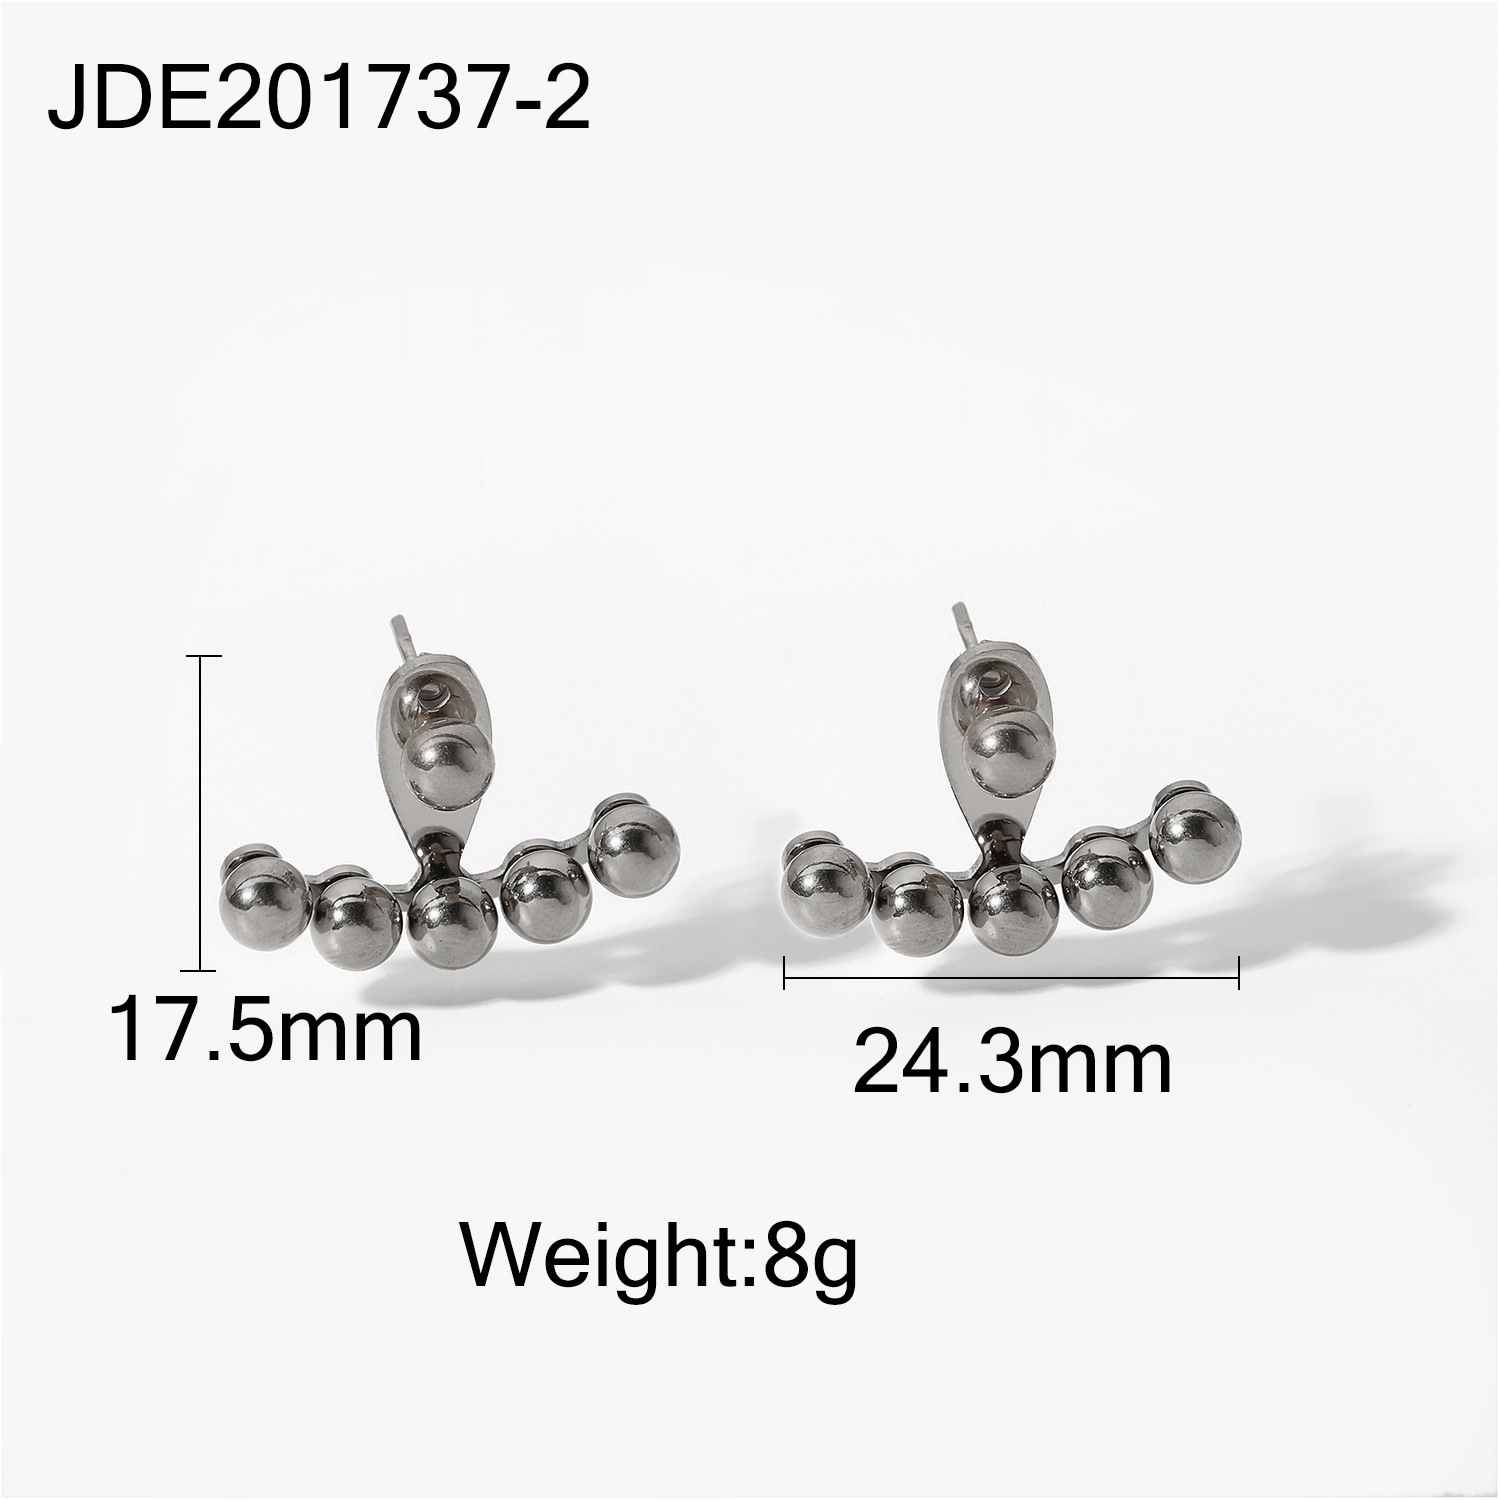 2:JDE201737-2